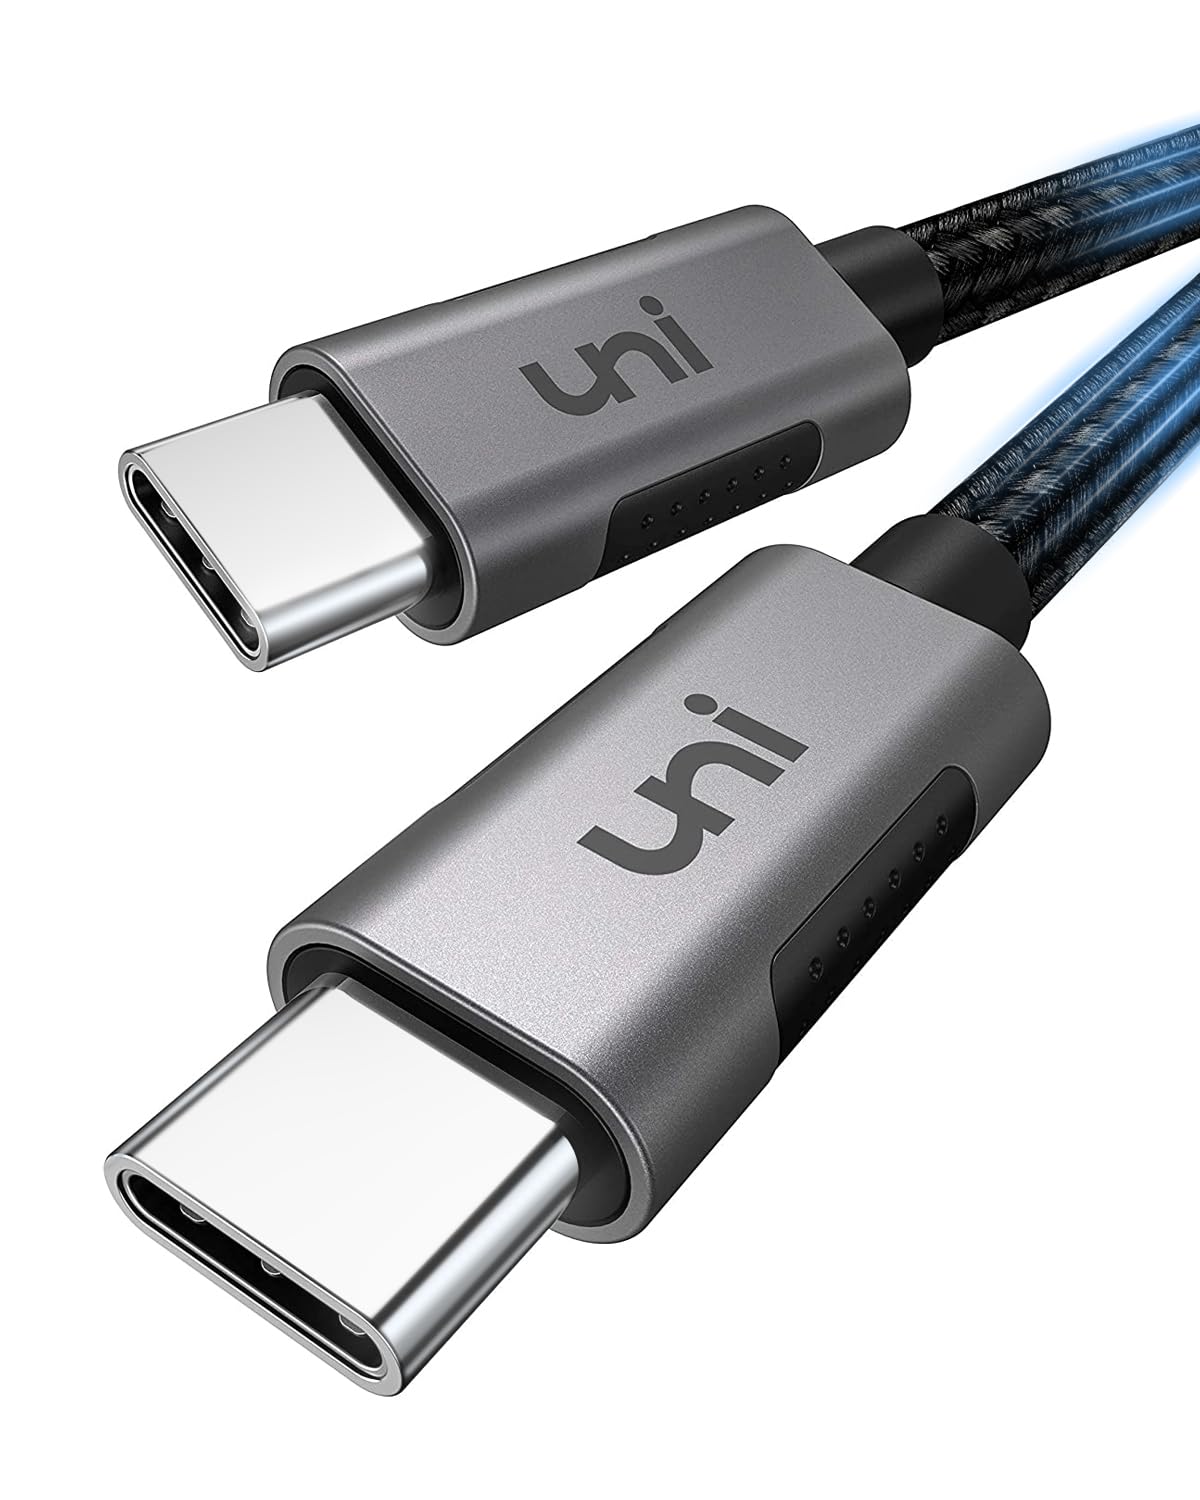 USB C ケーブル Type C100W/5A PD対応 超急速充電 2MuniAccessories 充電ケーブル タイプC iPhone